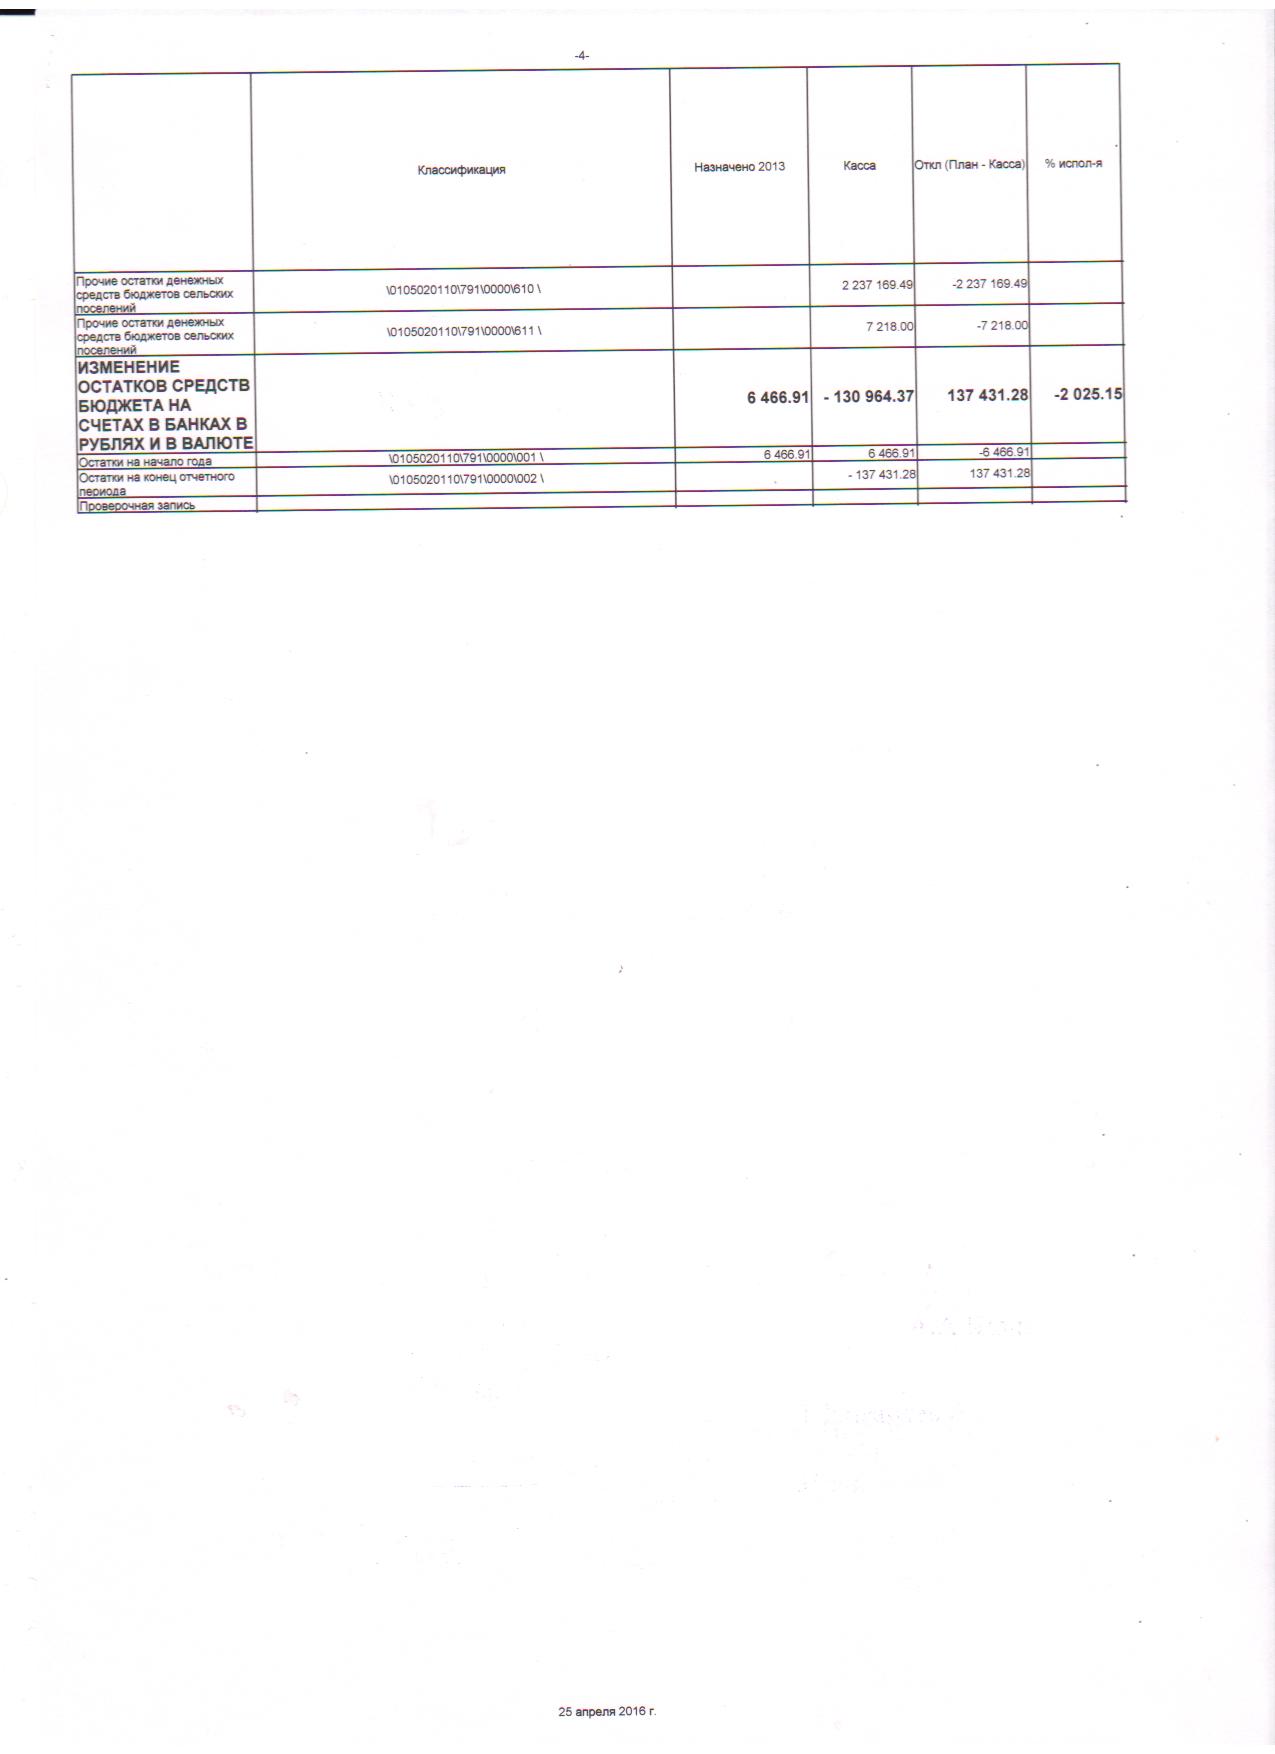 месячный отчет об исполнении бюджета на 31.12.2015г. 003